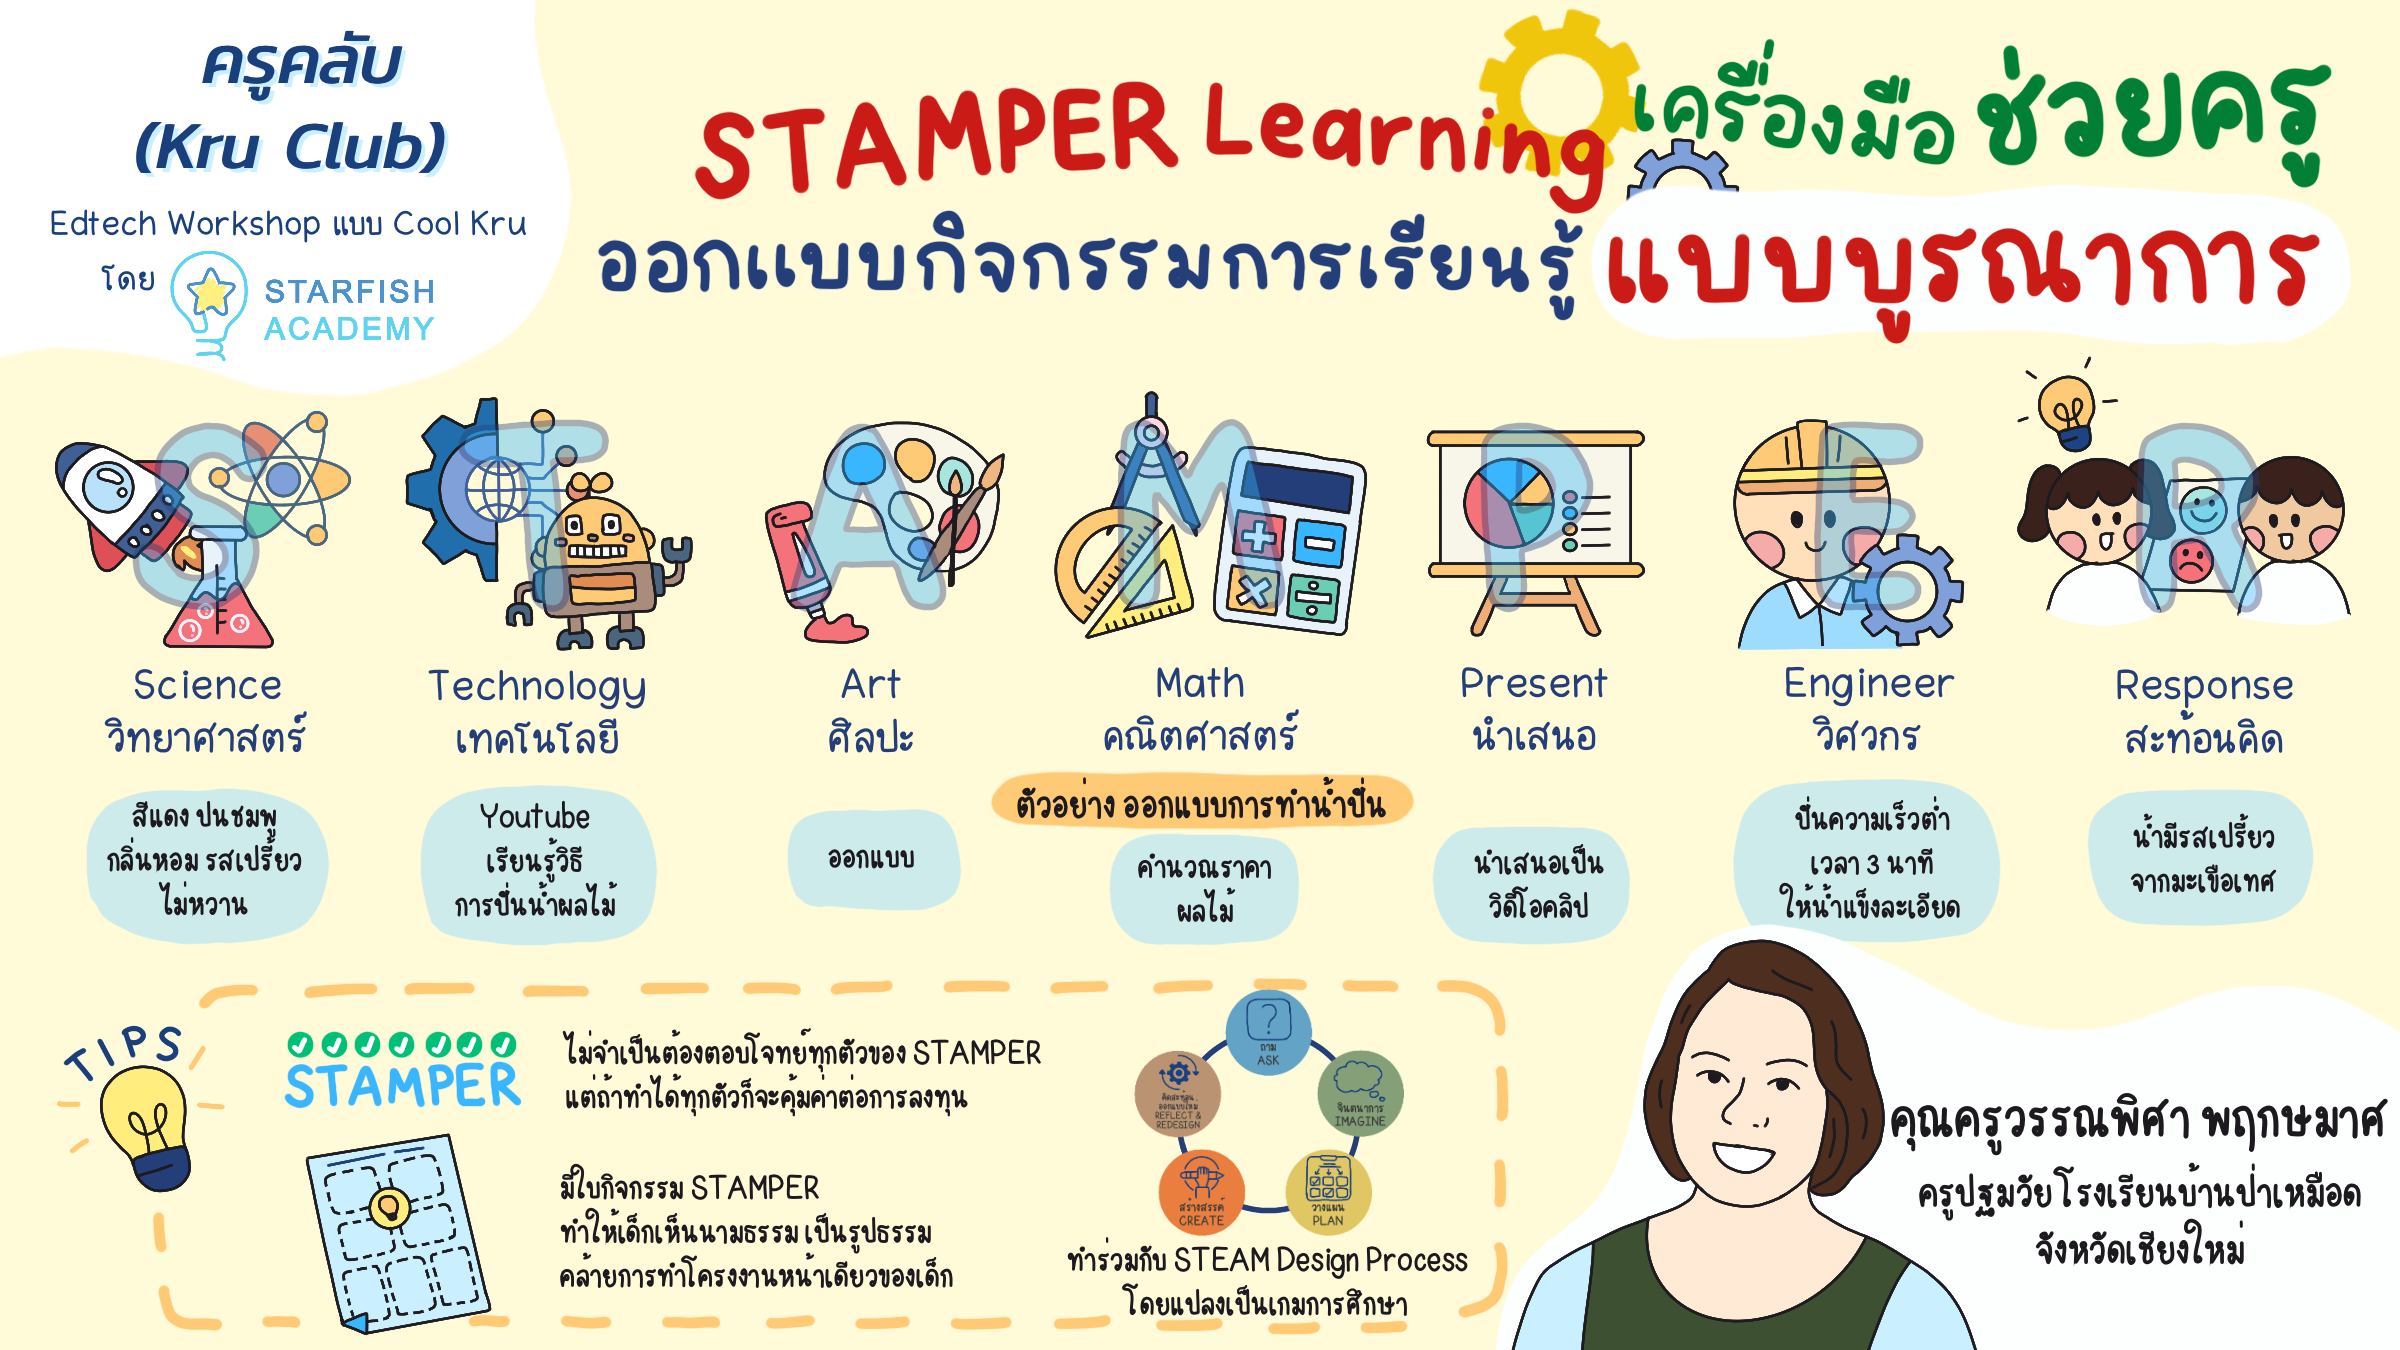 STAMPER Learning เครื่องมือช่วยครู ออกแบบกิจกรรมการเรียนรู้แบบบูรณาการ